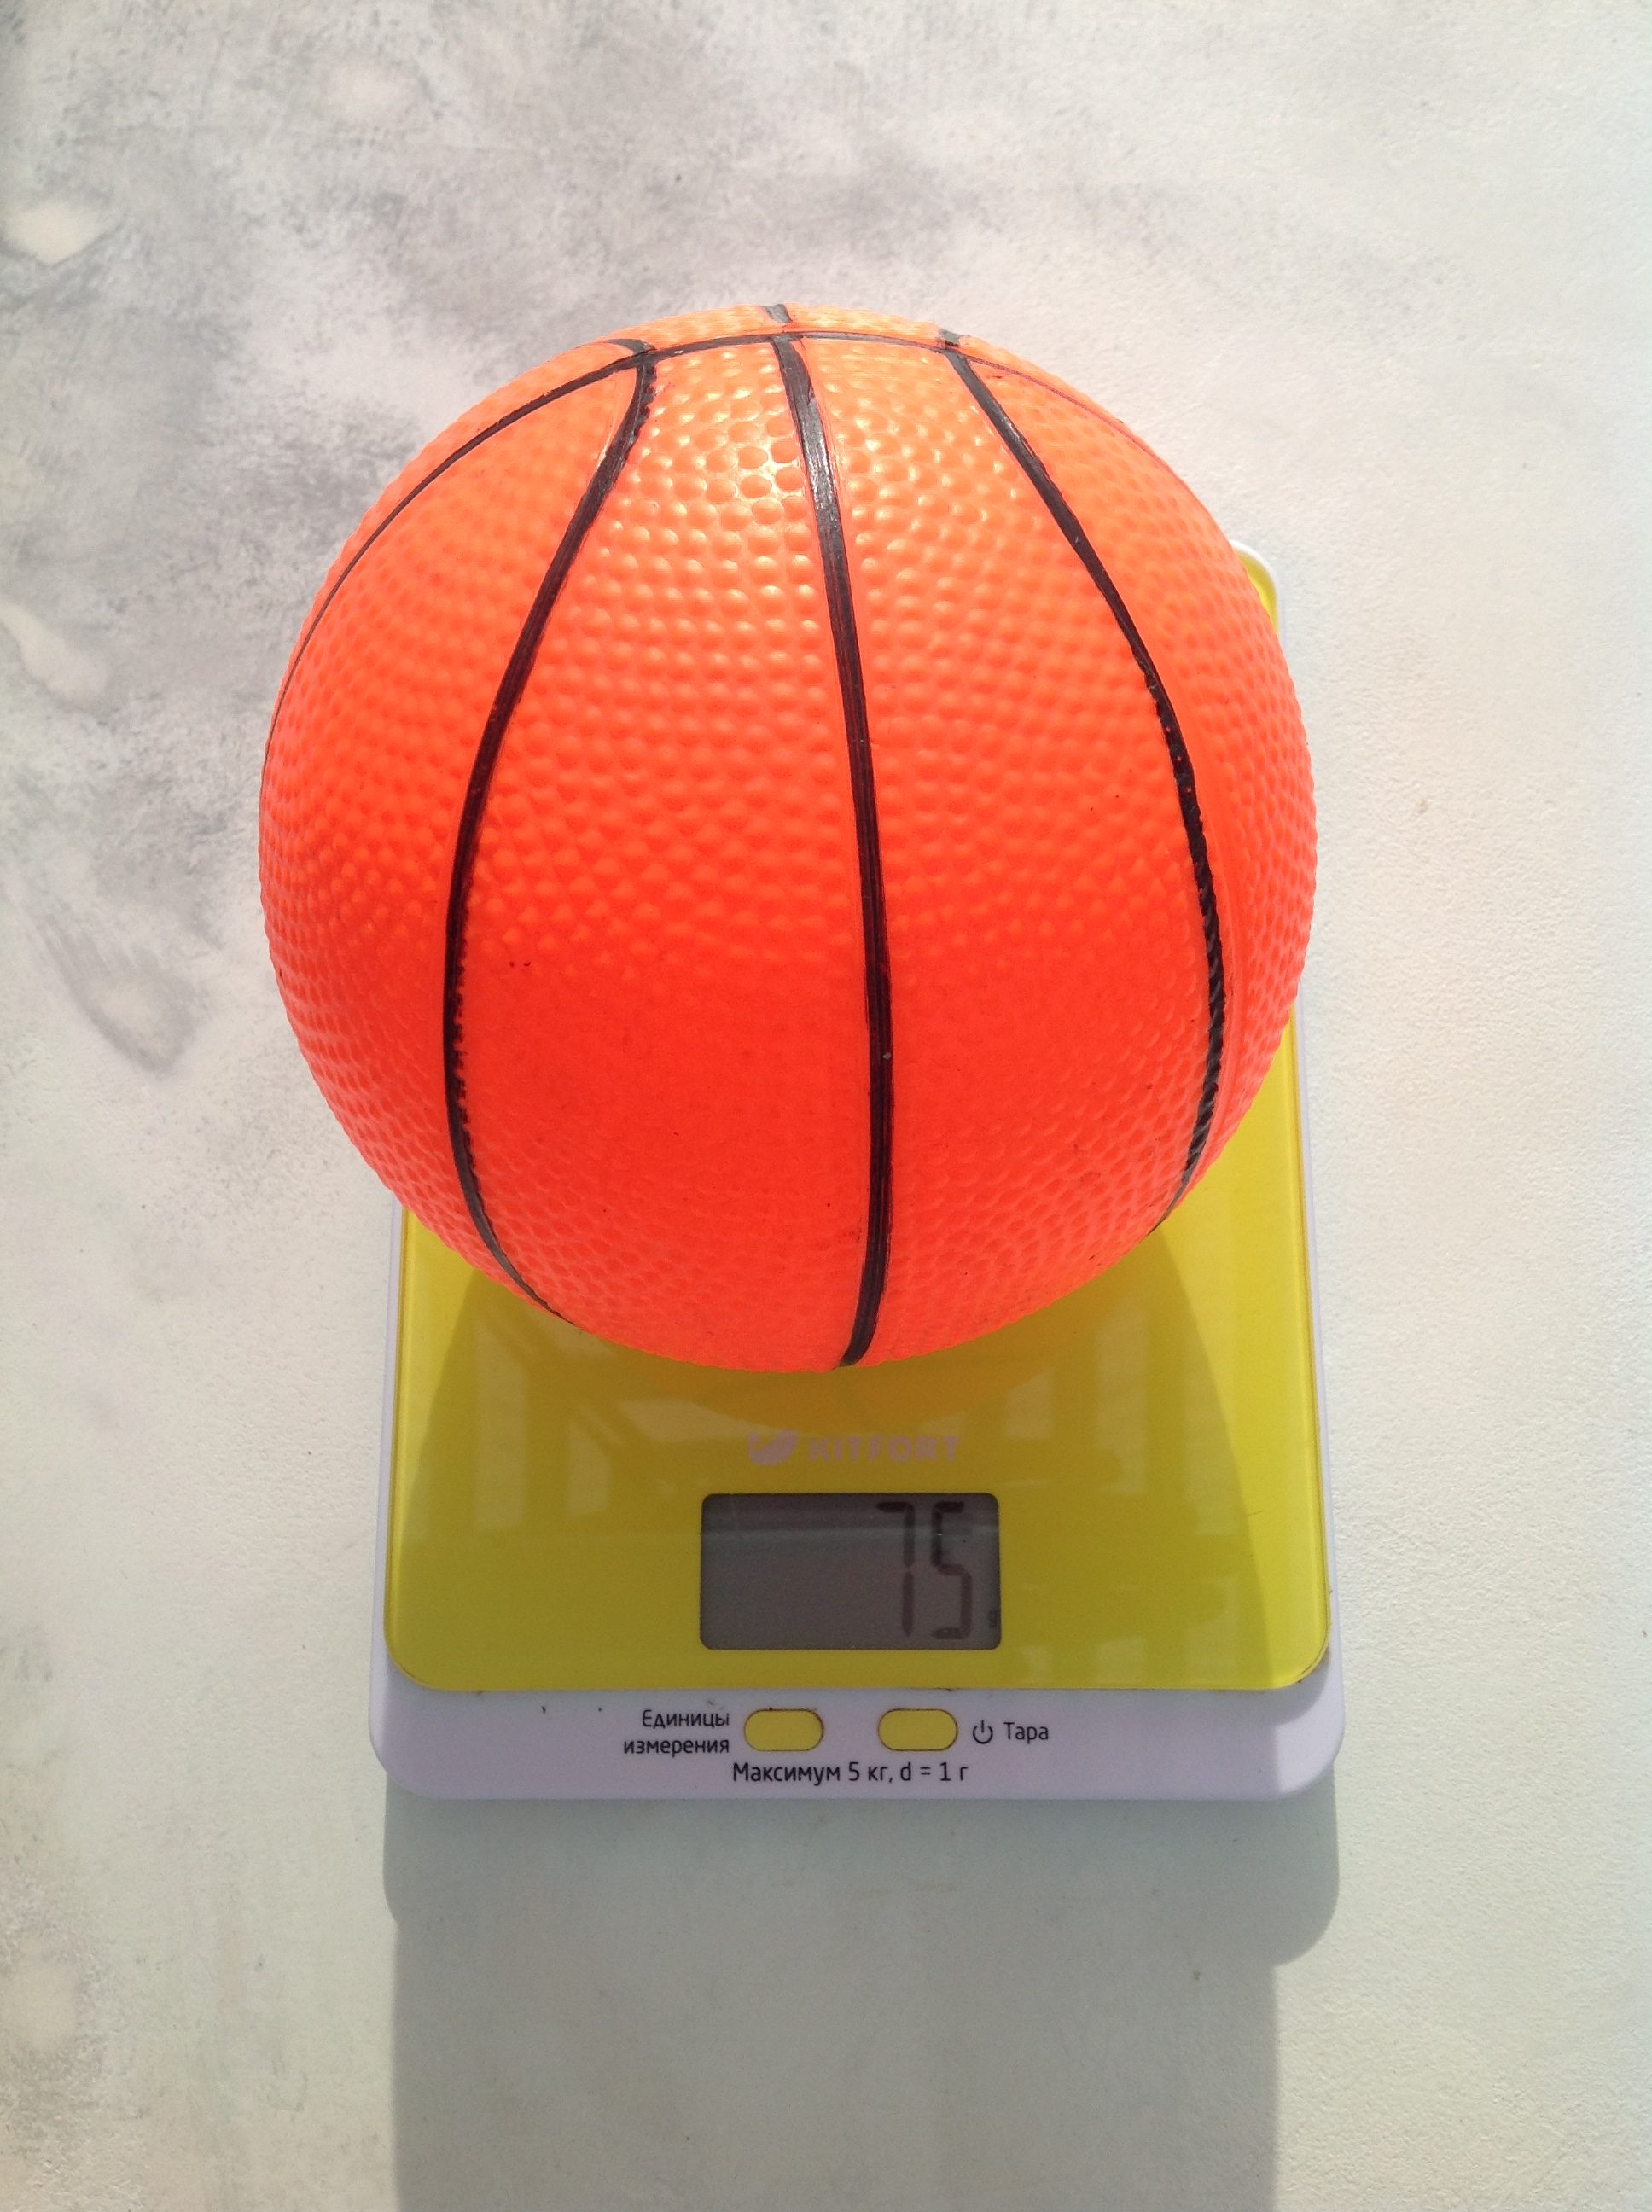 Berapa berat bola basket anak?